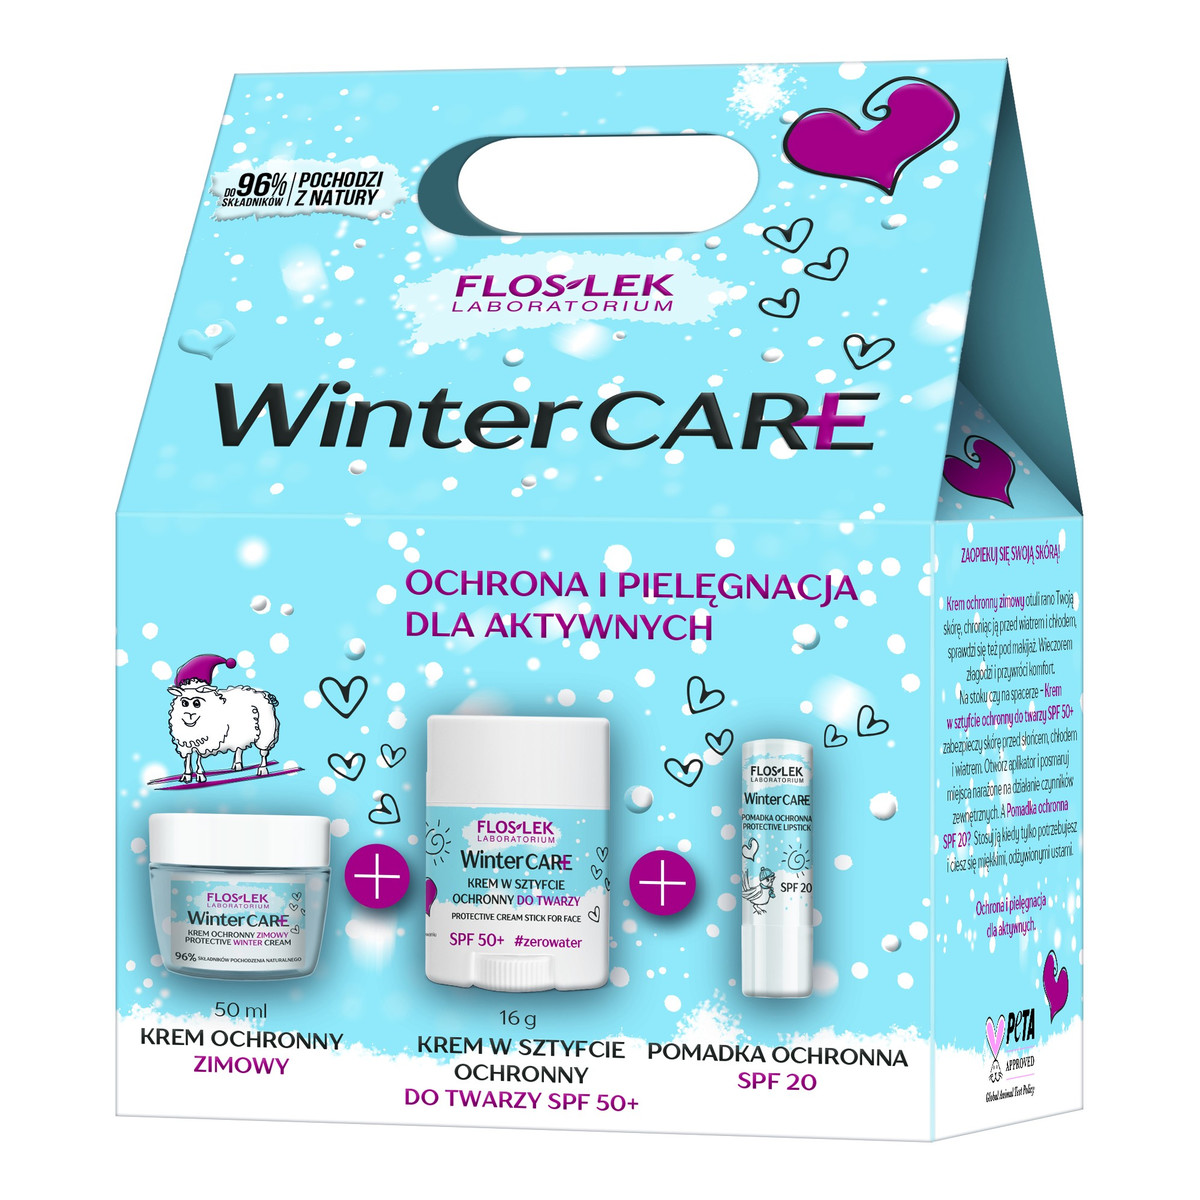 FlosLek Zestaw prezentowy Winter Care (krem ochronny + krem w sztyfcie + pomadka)